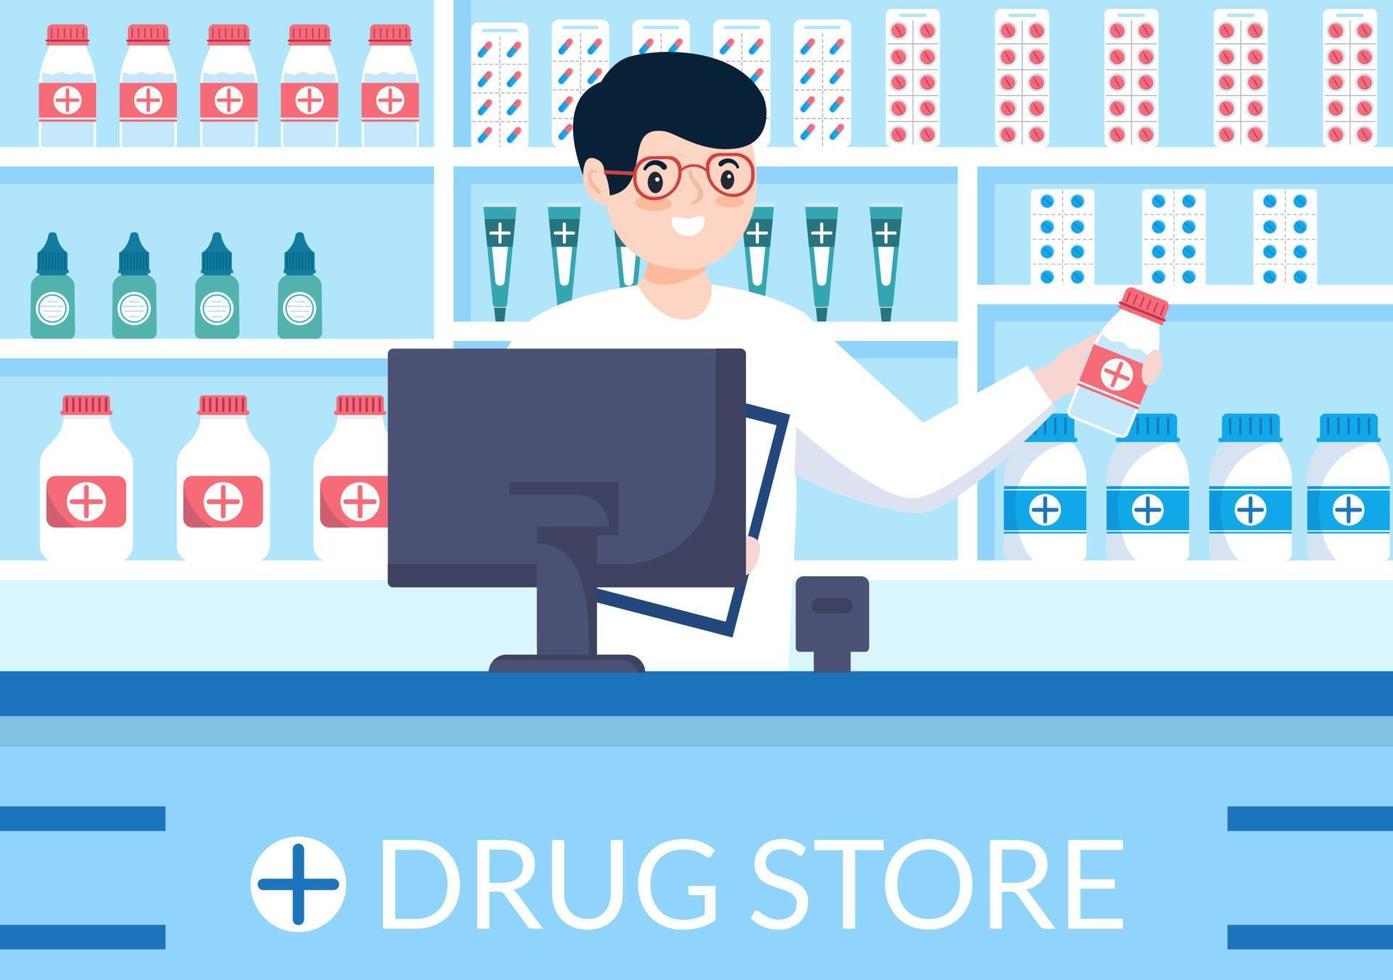 modelo de farmácia loja de ilustração plana de desenhos animados desenhados à mão para a venda de medicamentos, farmacêutico, medicamento, cápsulas e garrafa vetor